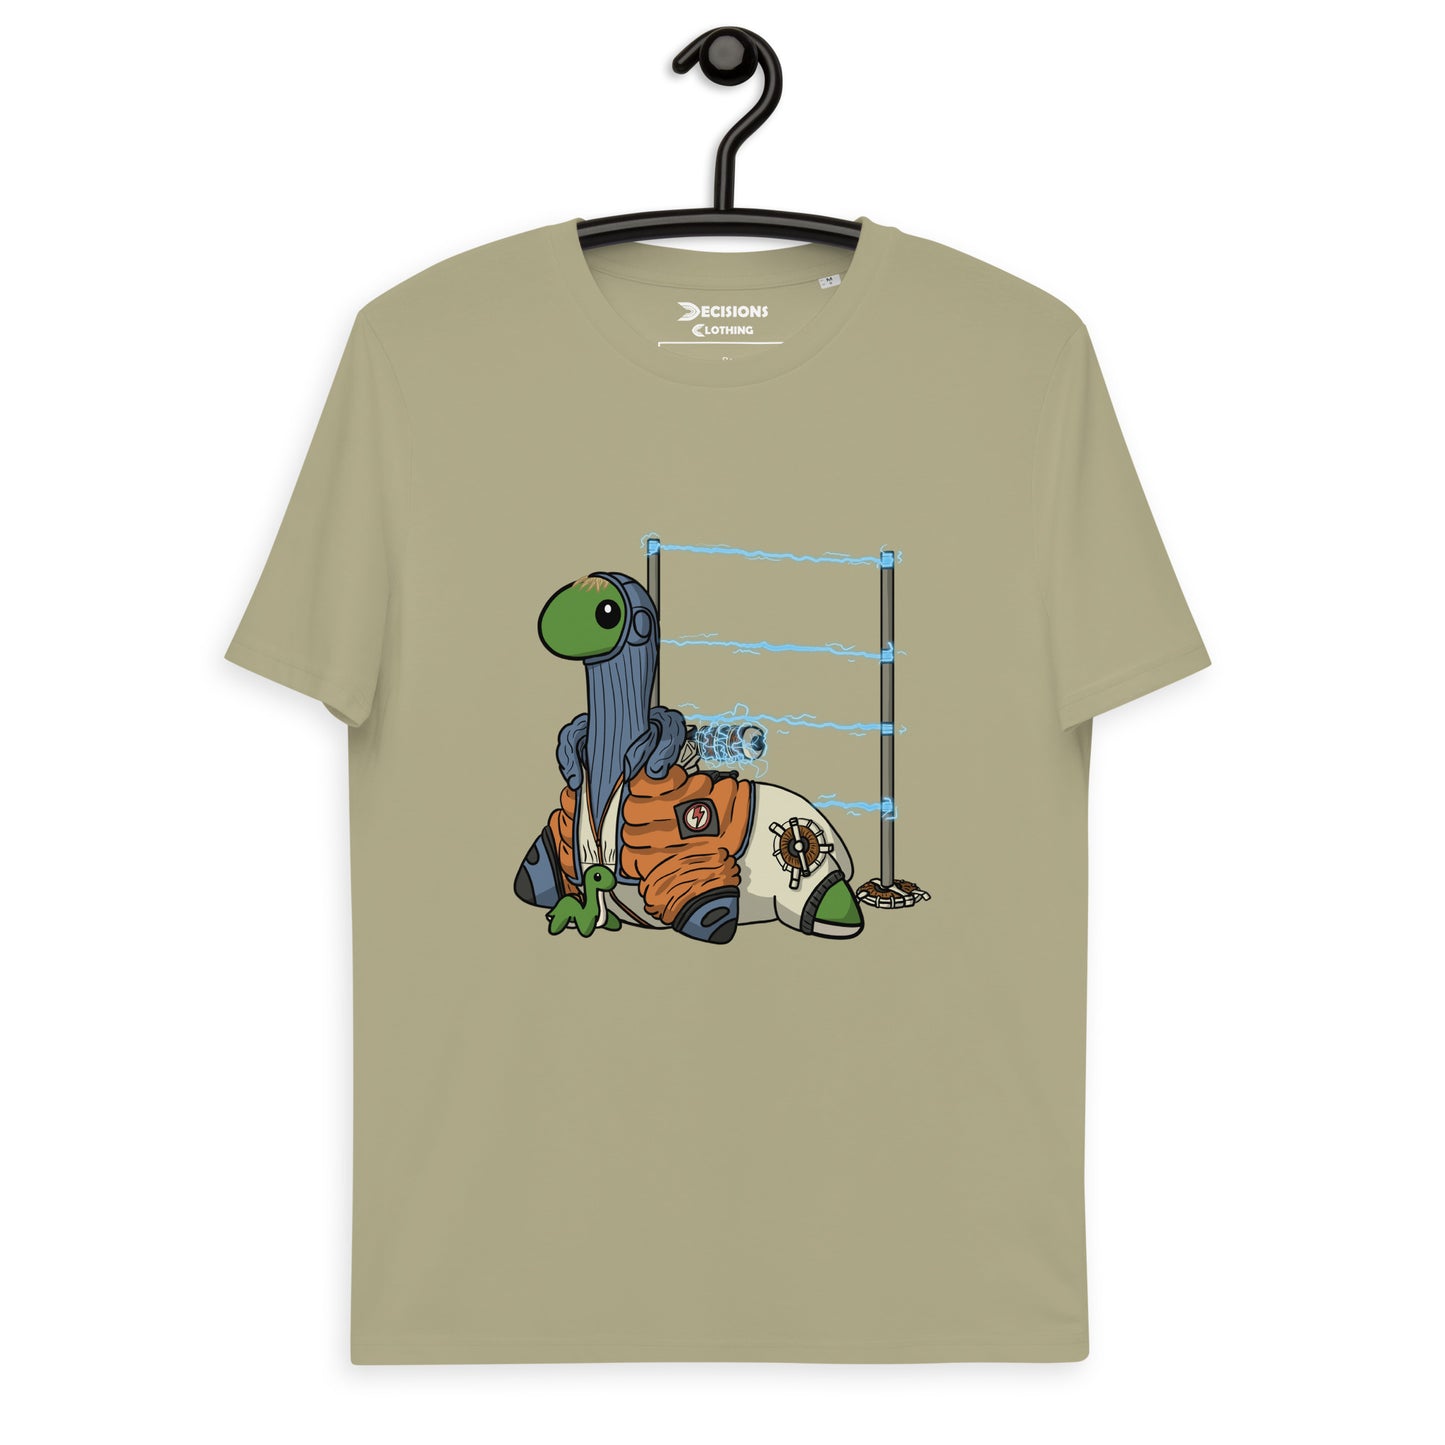 Watson Nessie T-Shirt (Apex Legends)